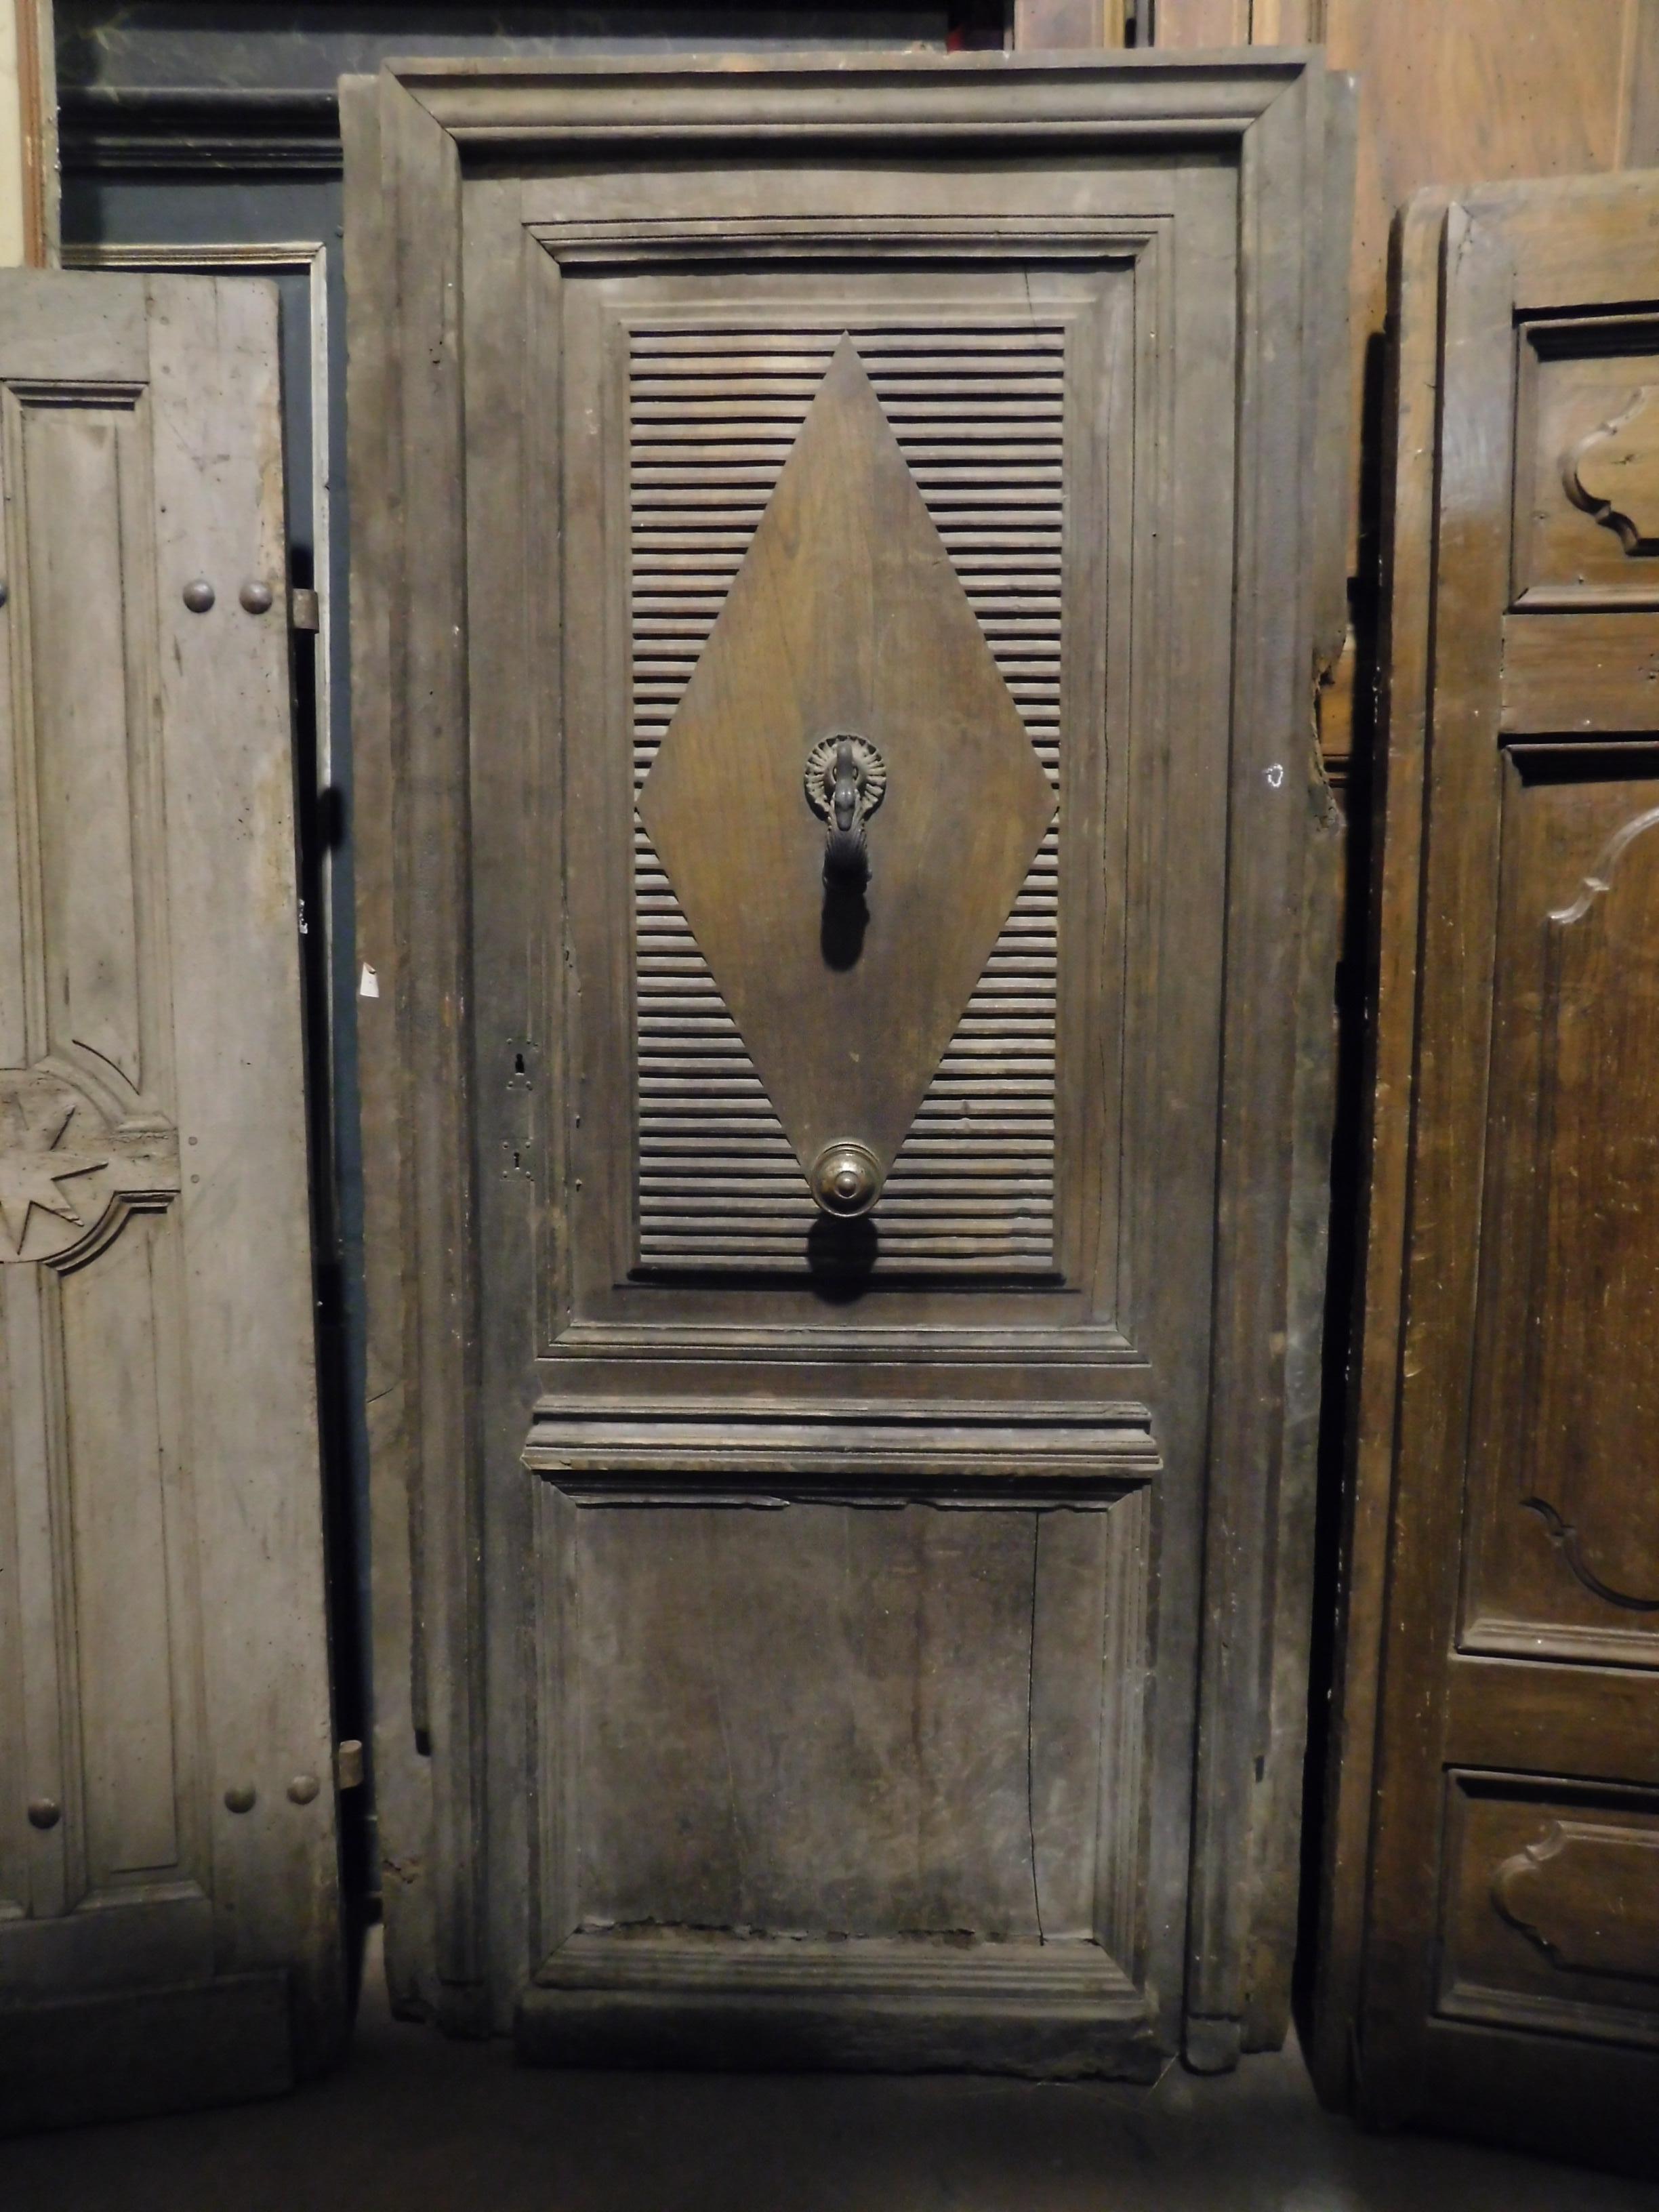 Ancienne porte d'entrée, porte principale, avec encadrement d'origine, heurtoir et bouton d'origine encore présents, sculptée à la main dans un précieux bois de noyer patiné, époque fascinante qui en fait une très belle couleur, fabriquée à la main